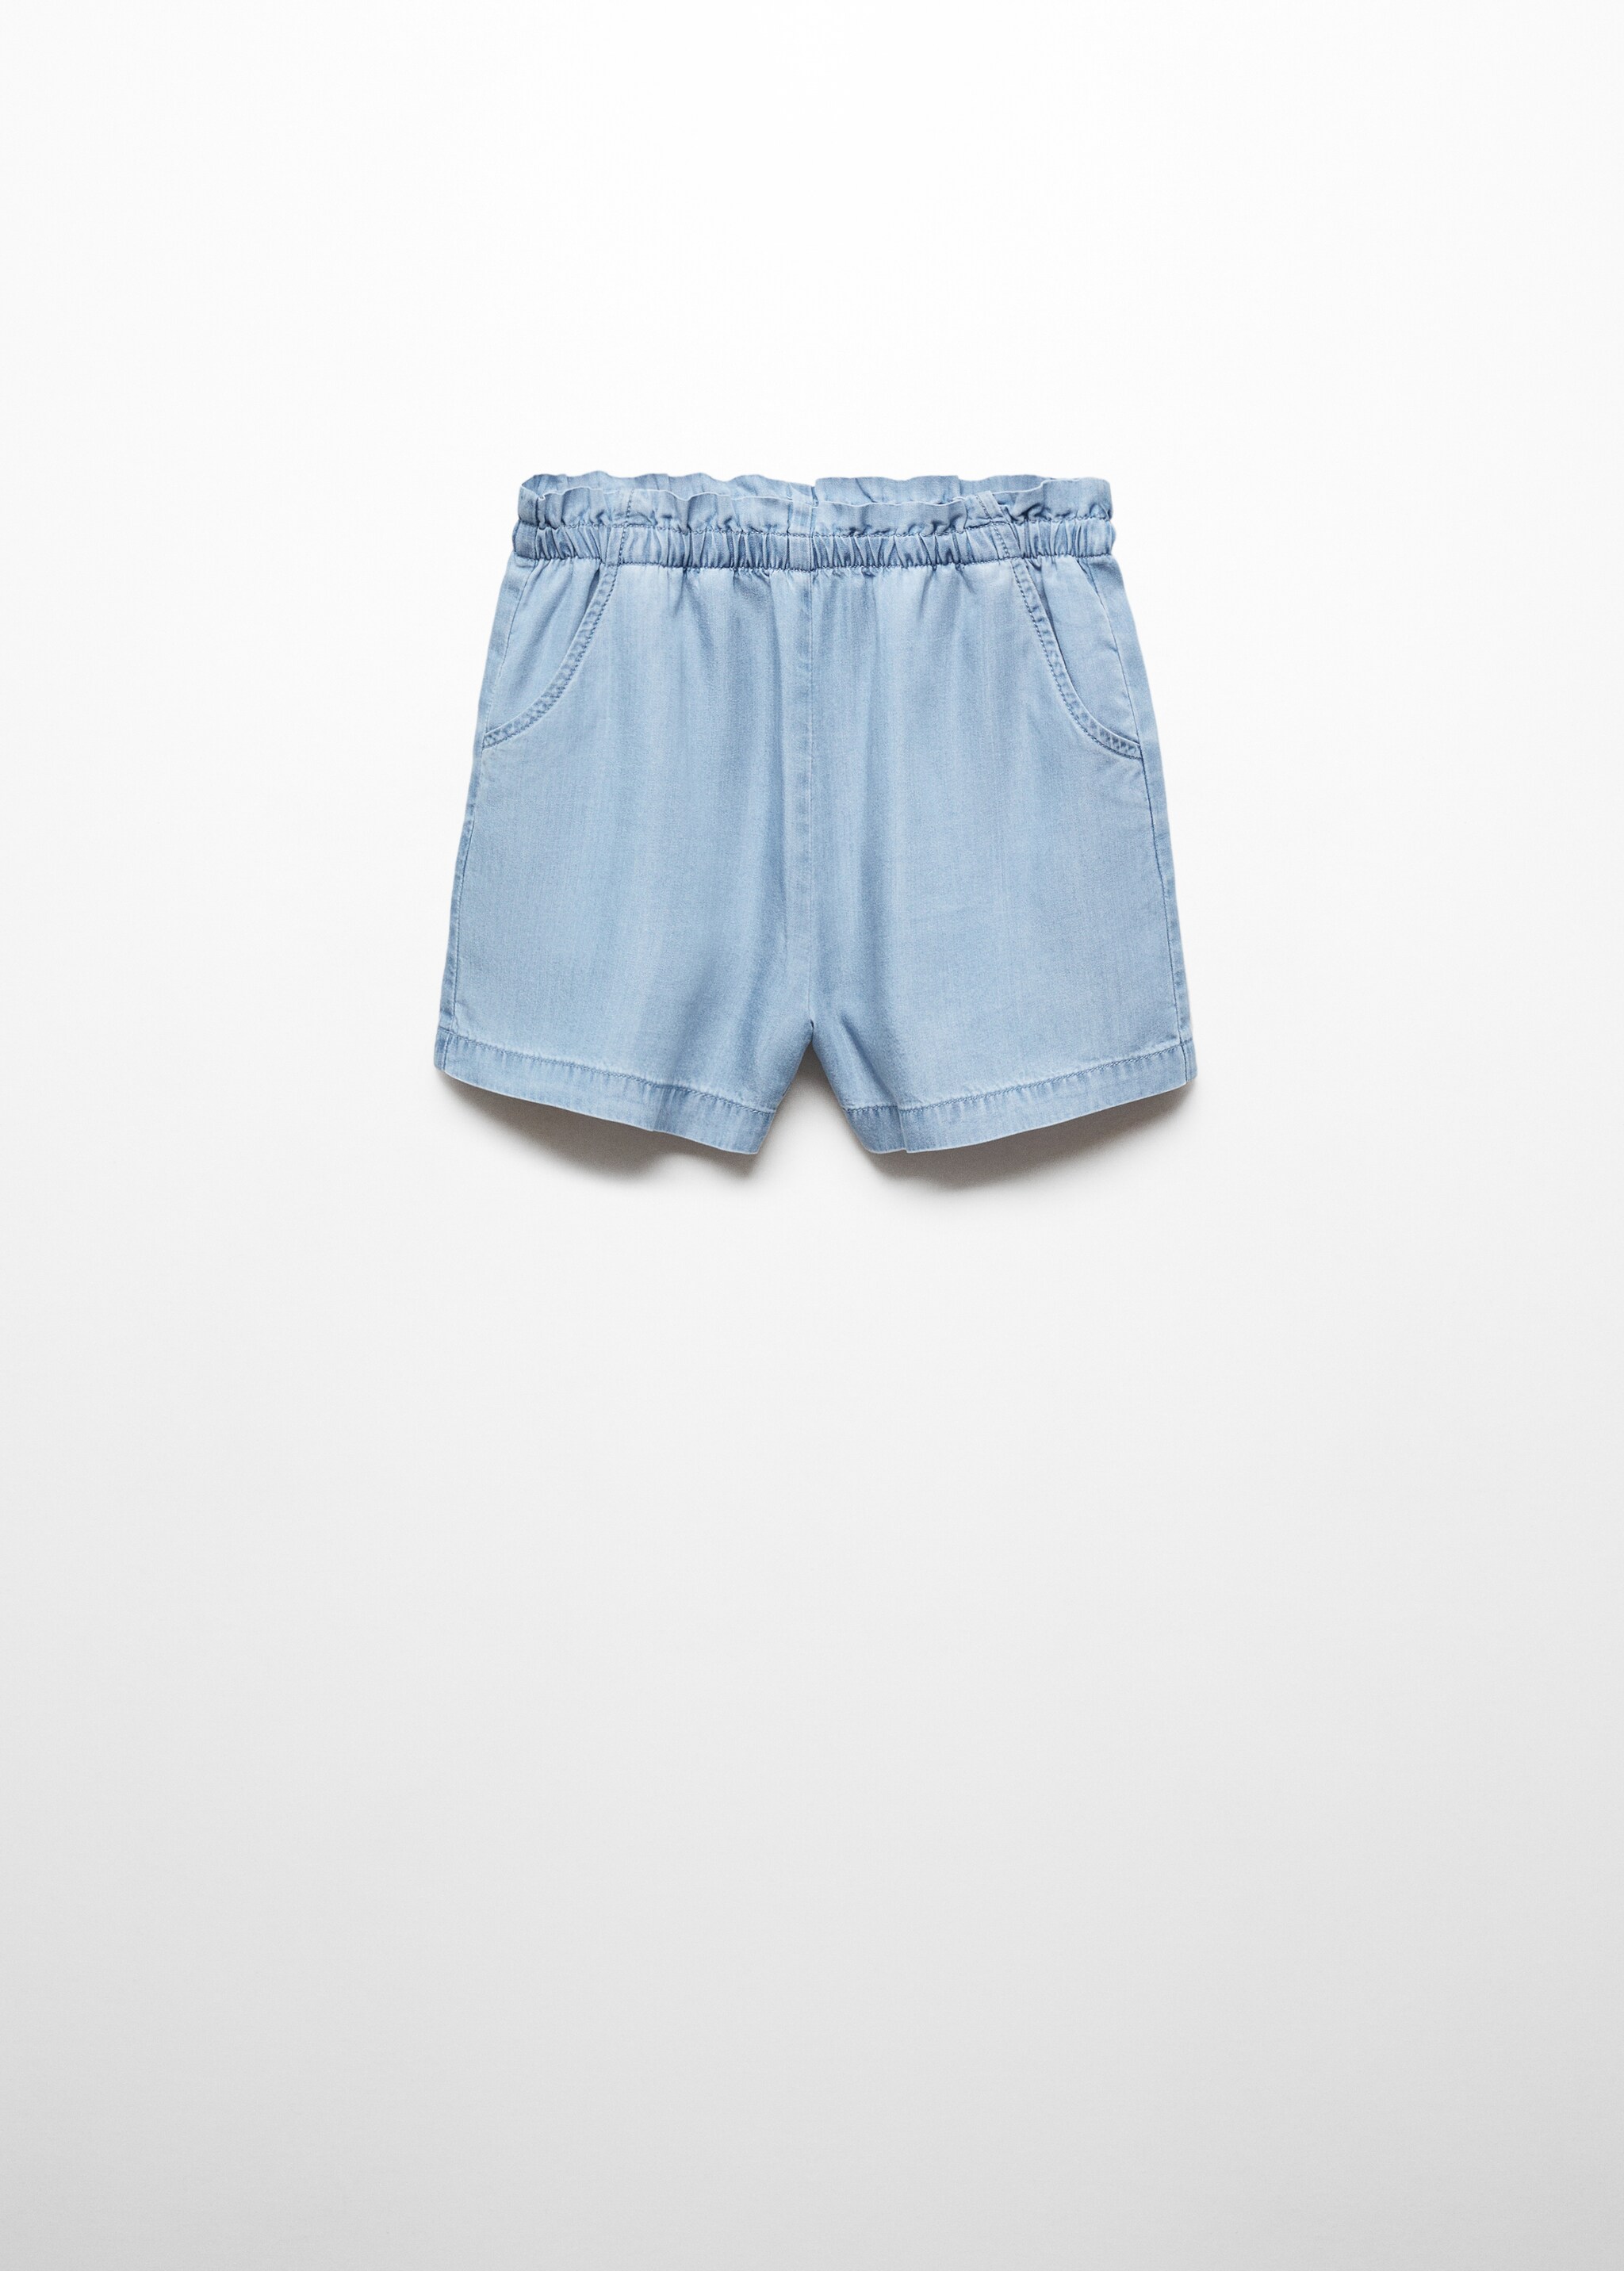 Shorts lyocell cintura elástica - Artículo sin modelo